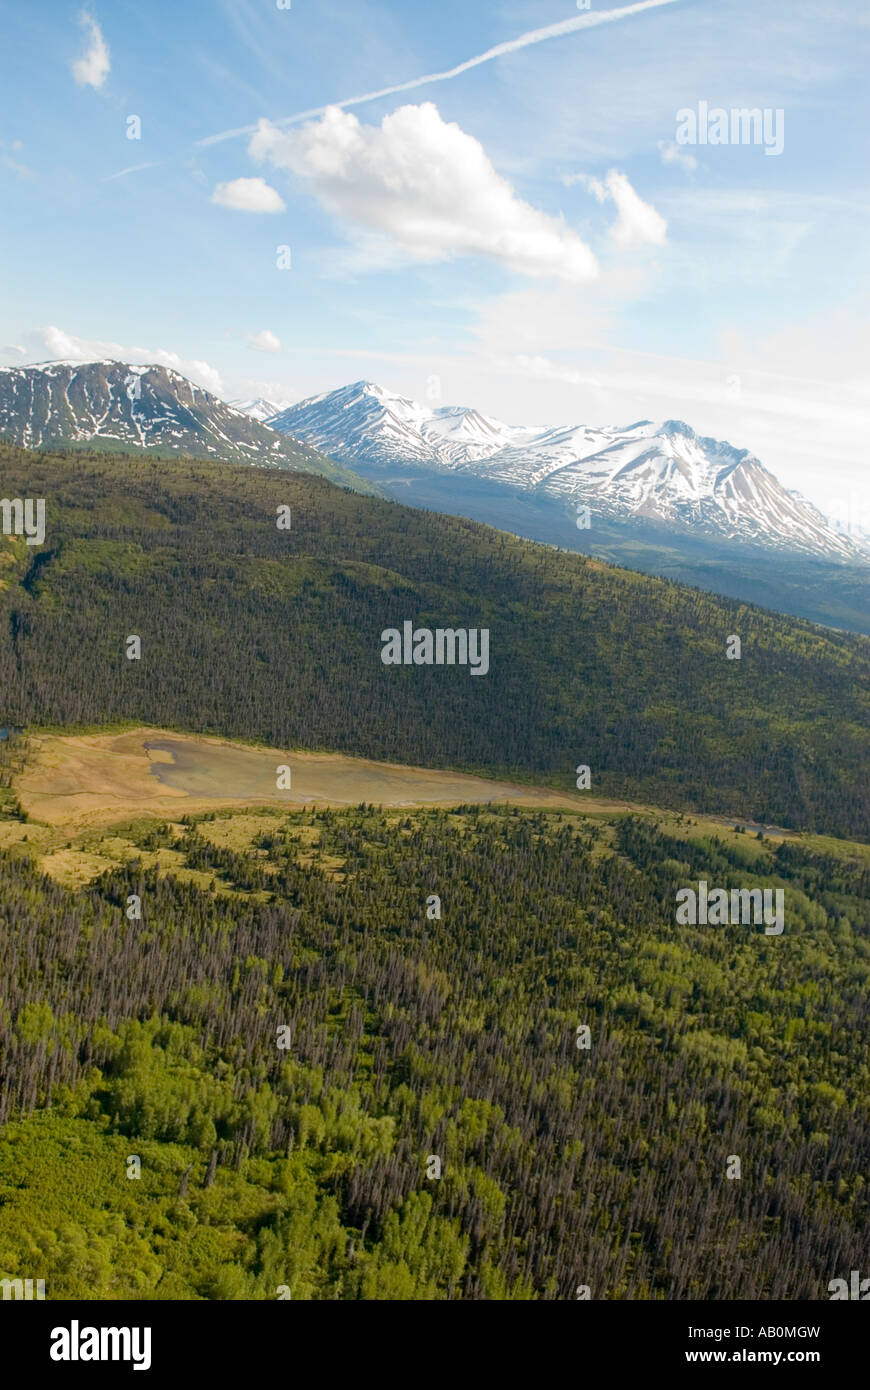 La gamme St Elias dans le parc national Kluane, Yukon Canadad Banque D'Images